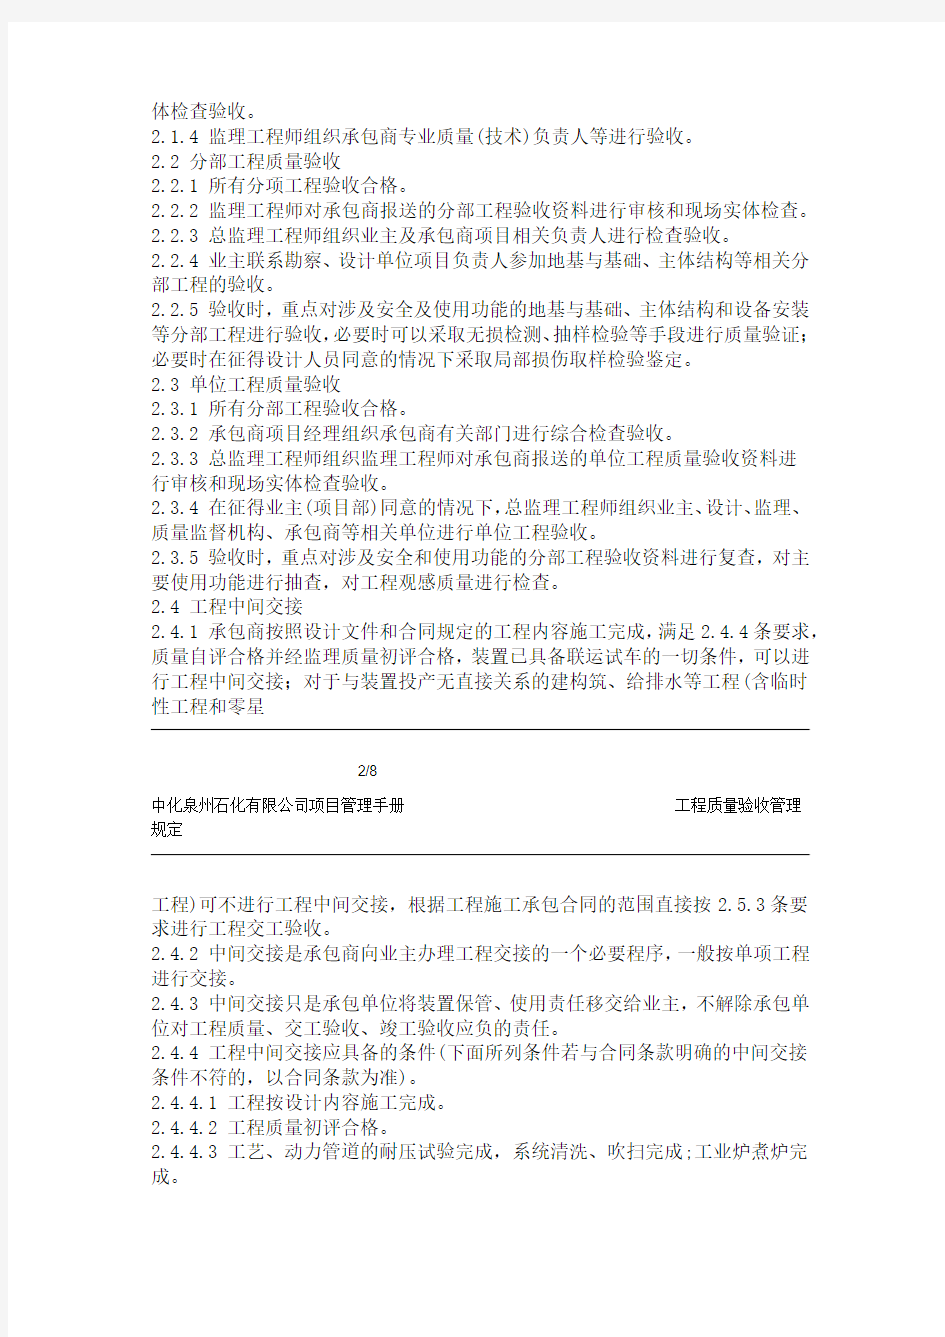 中化泉州石化有限公司项目管理手册-工程质量验收管理规定